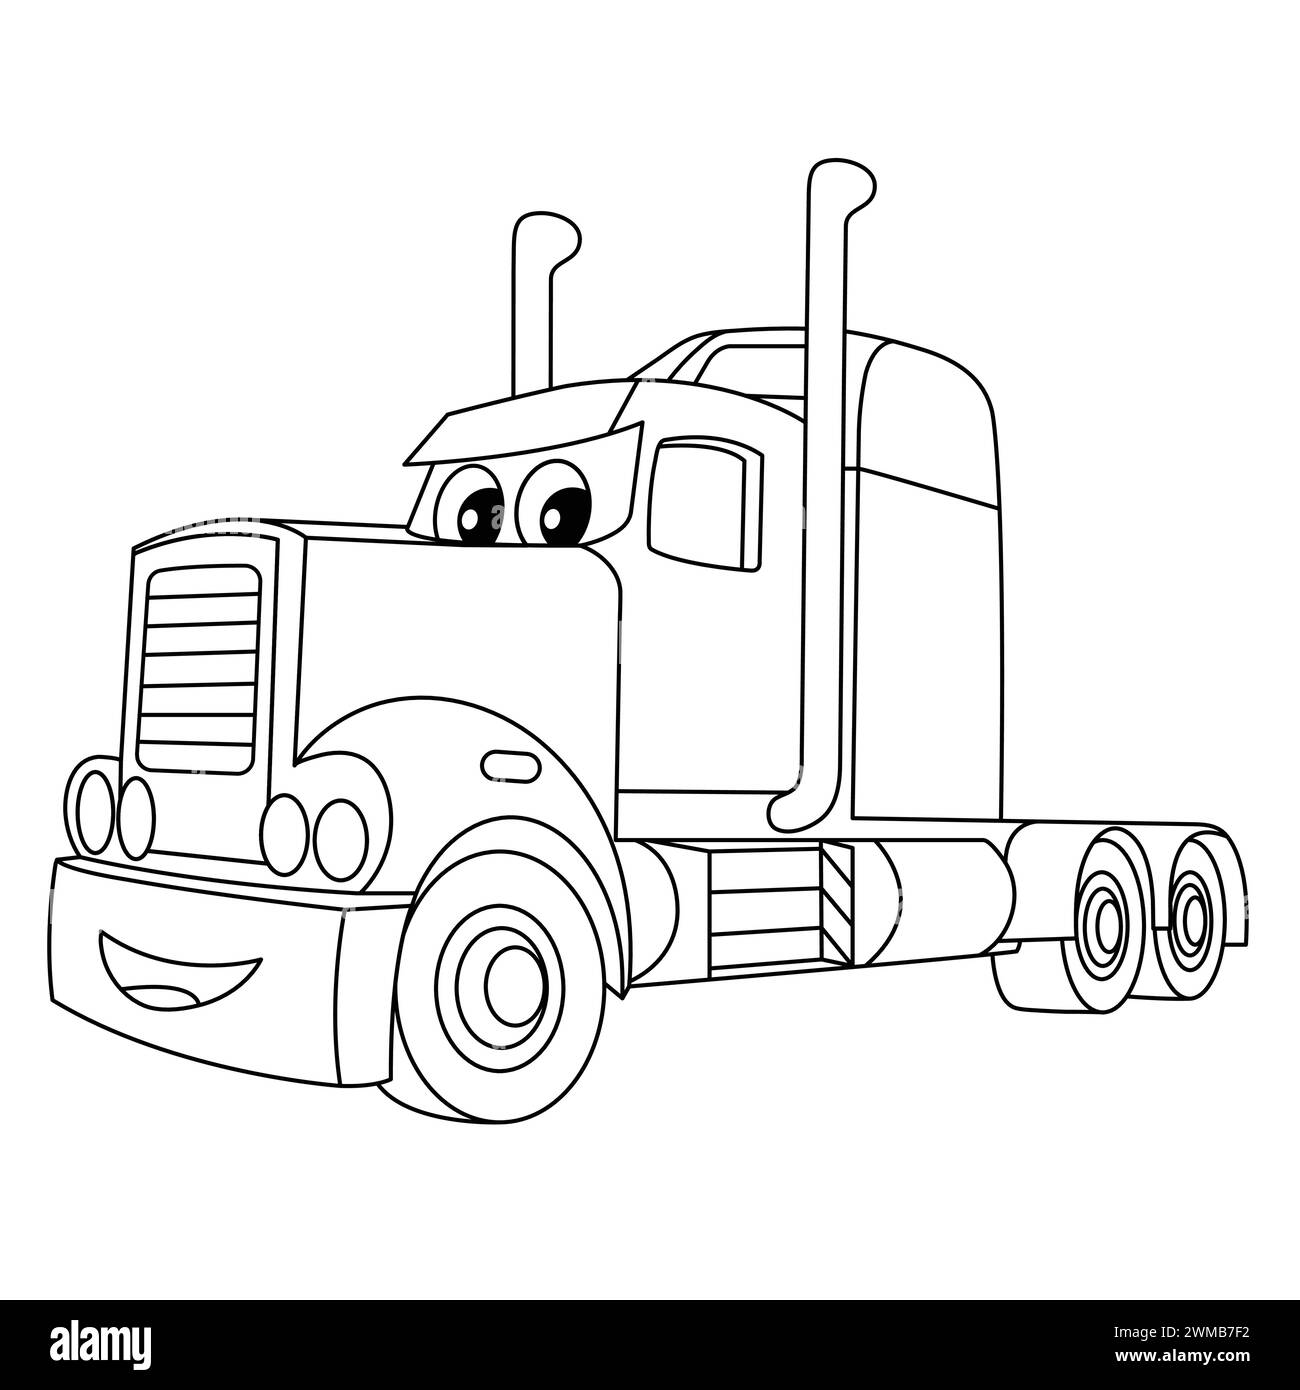 Coloris de camion de dessin animé Smile. Illustration vectorielle de remorque de gros camion. Véhicule lourd semi-camion avec visage drôle. Aperçu du camion Illustration de Vecteur